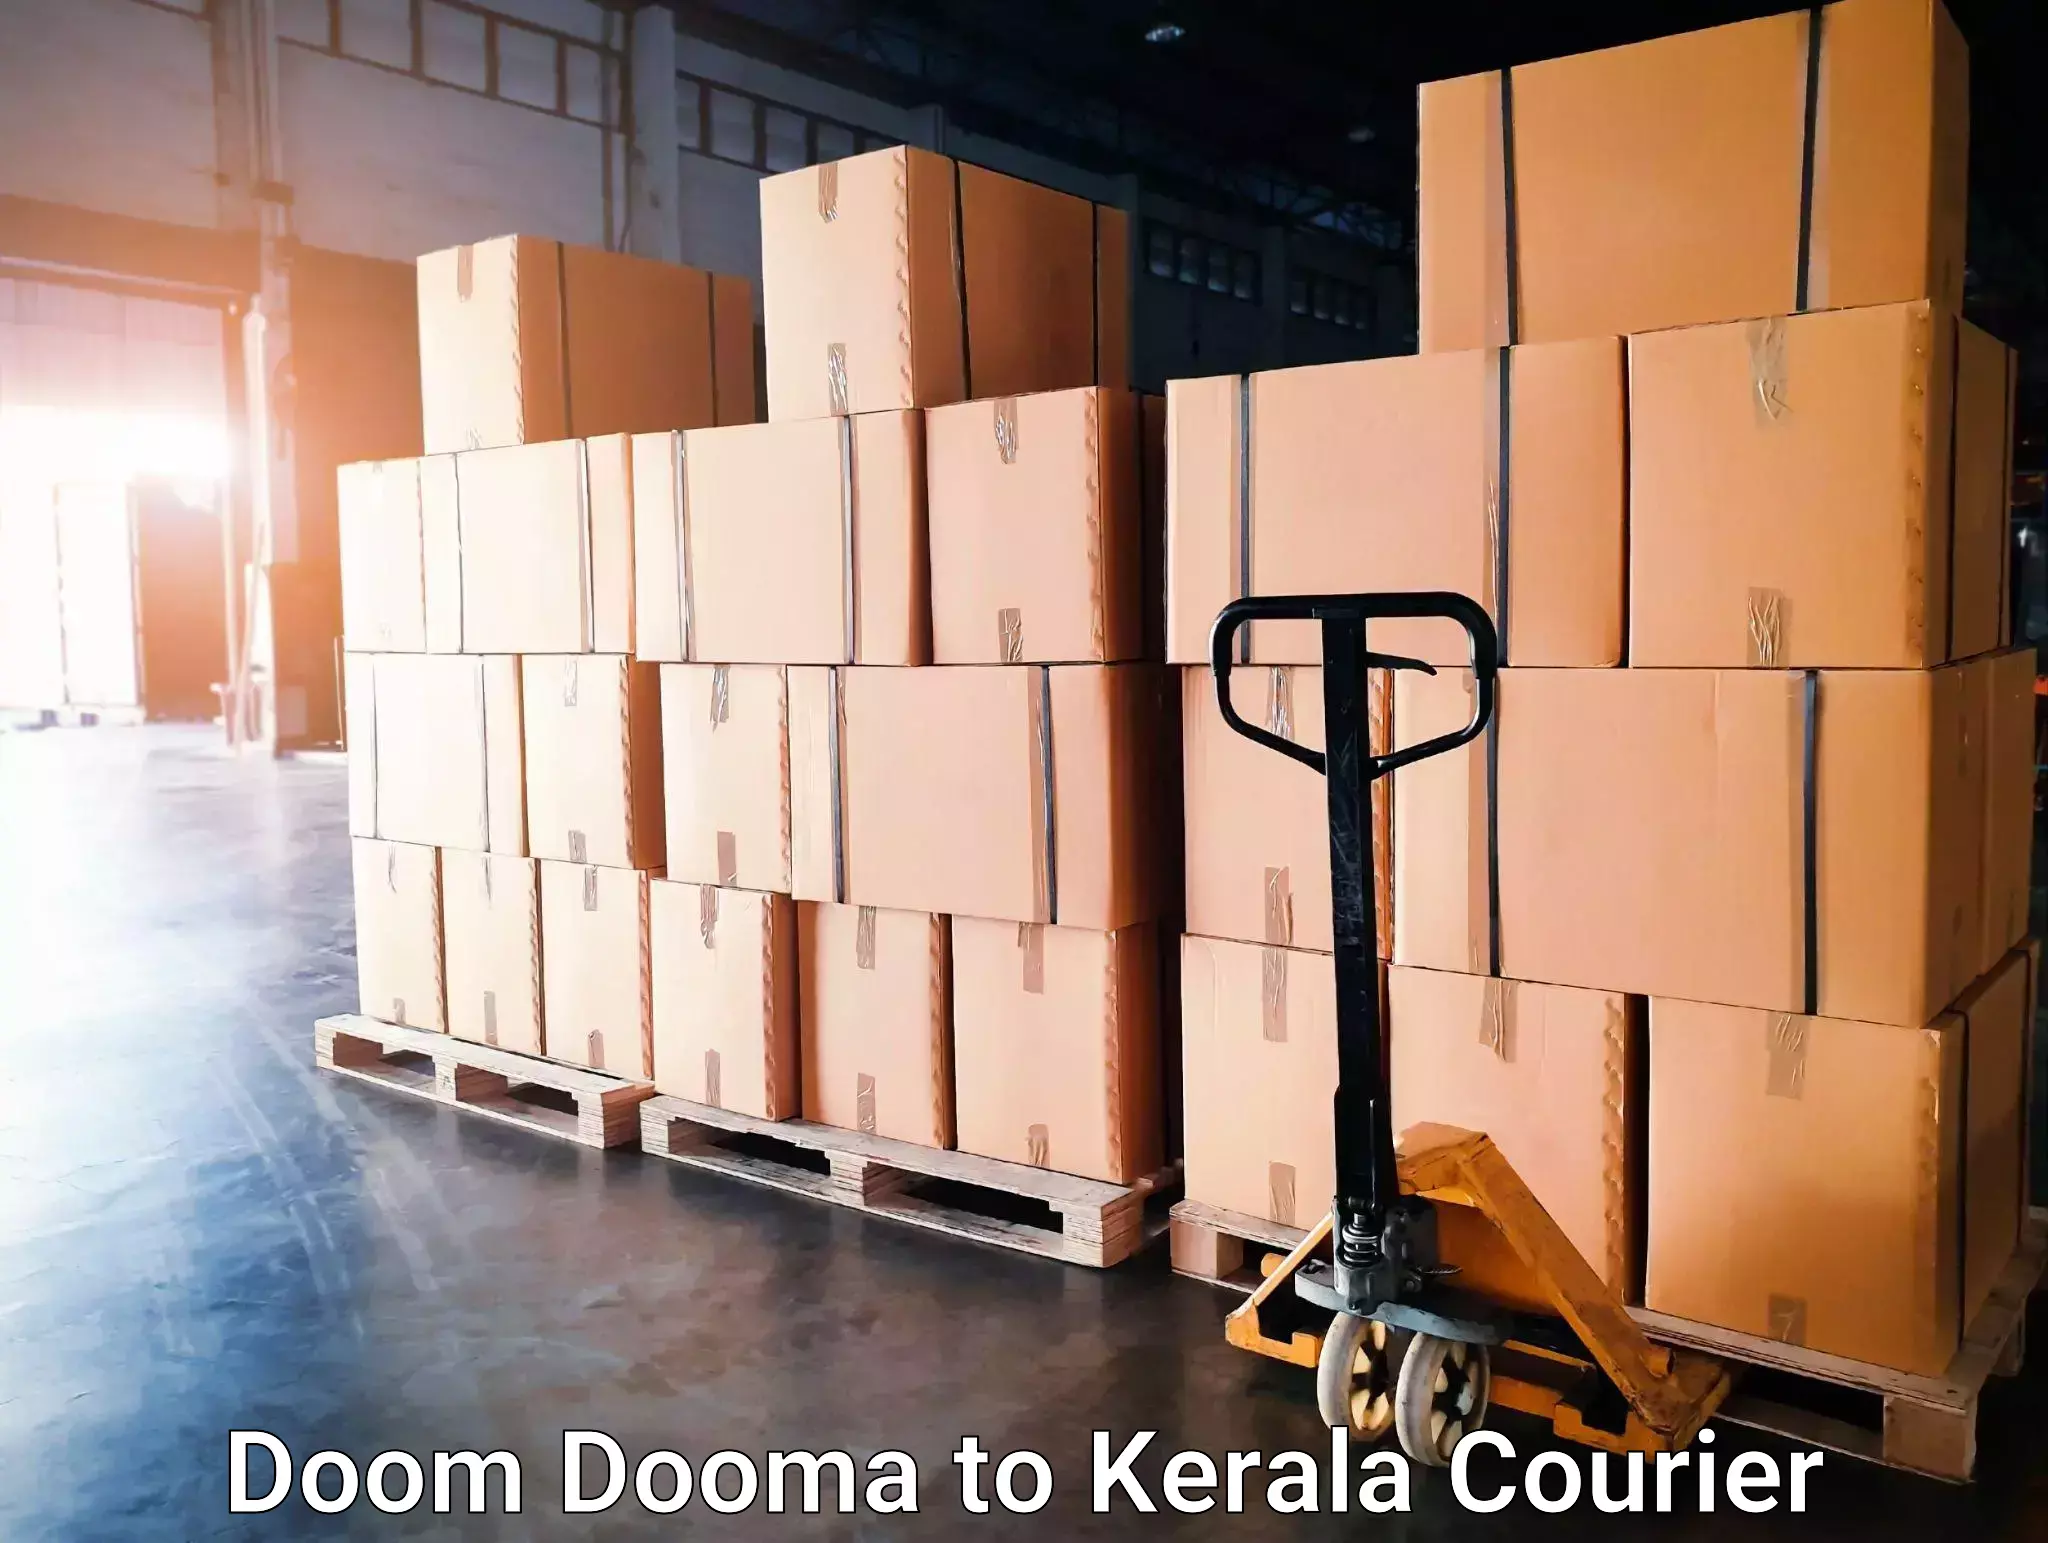 Door-to-door freight service Doom Dooma to Cochin Port Kochi